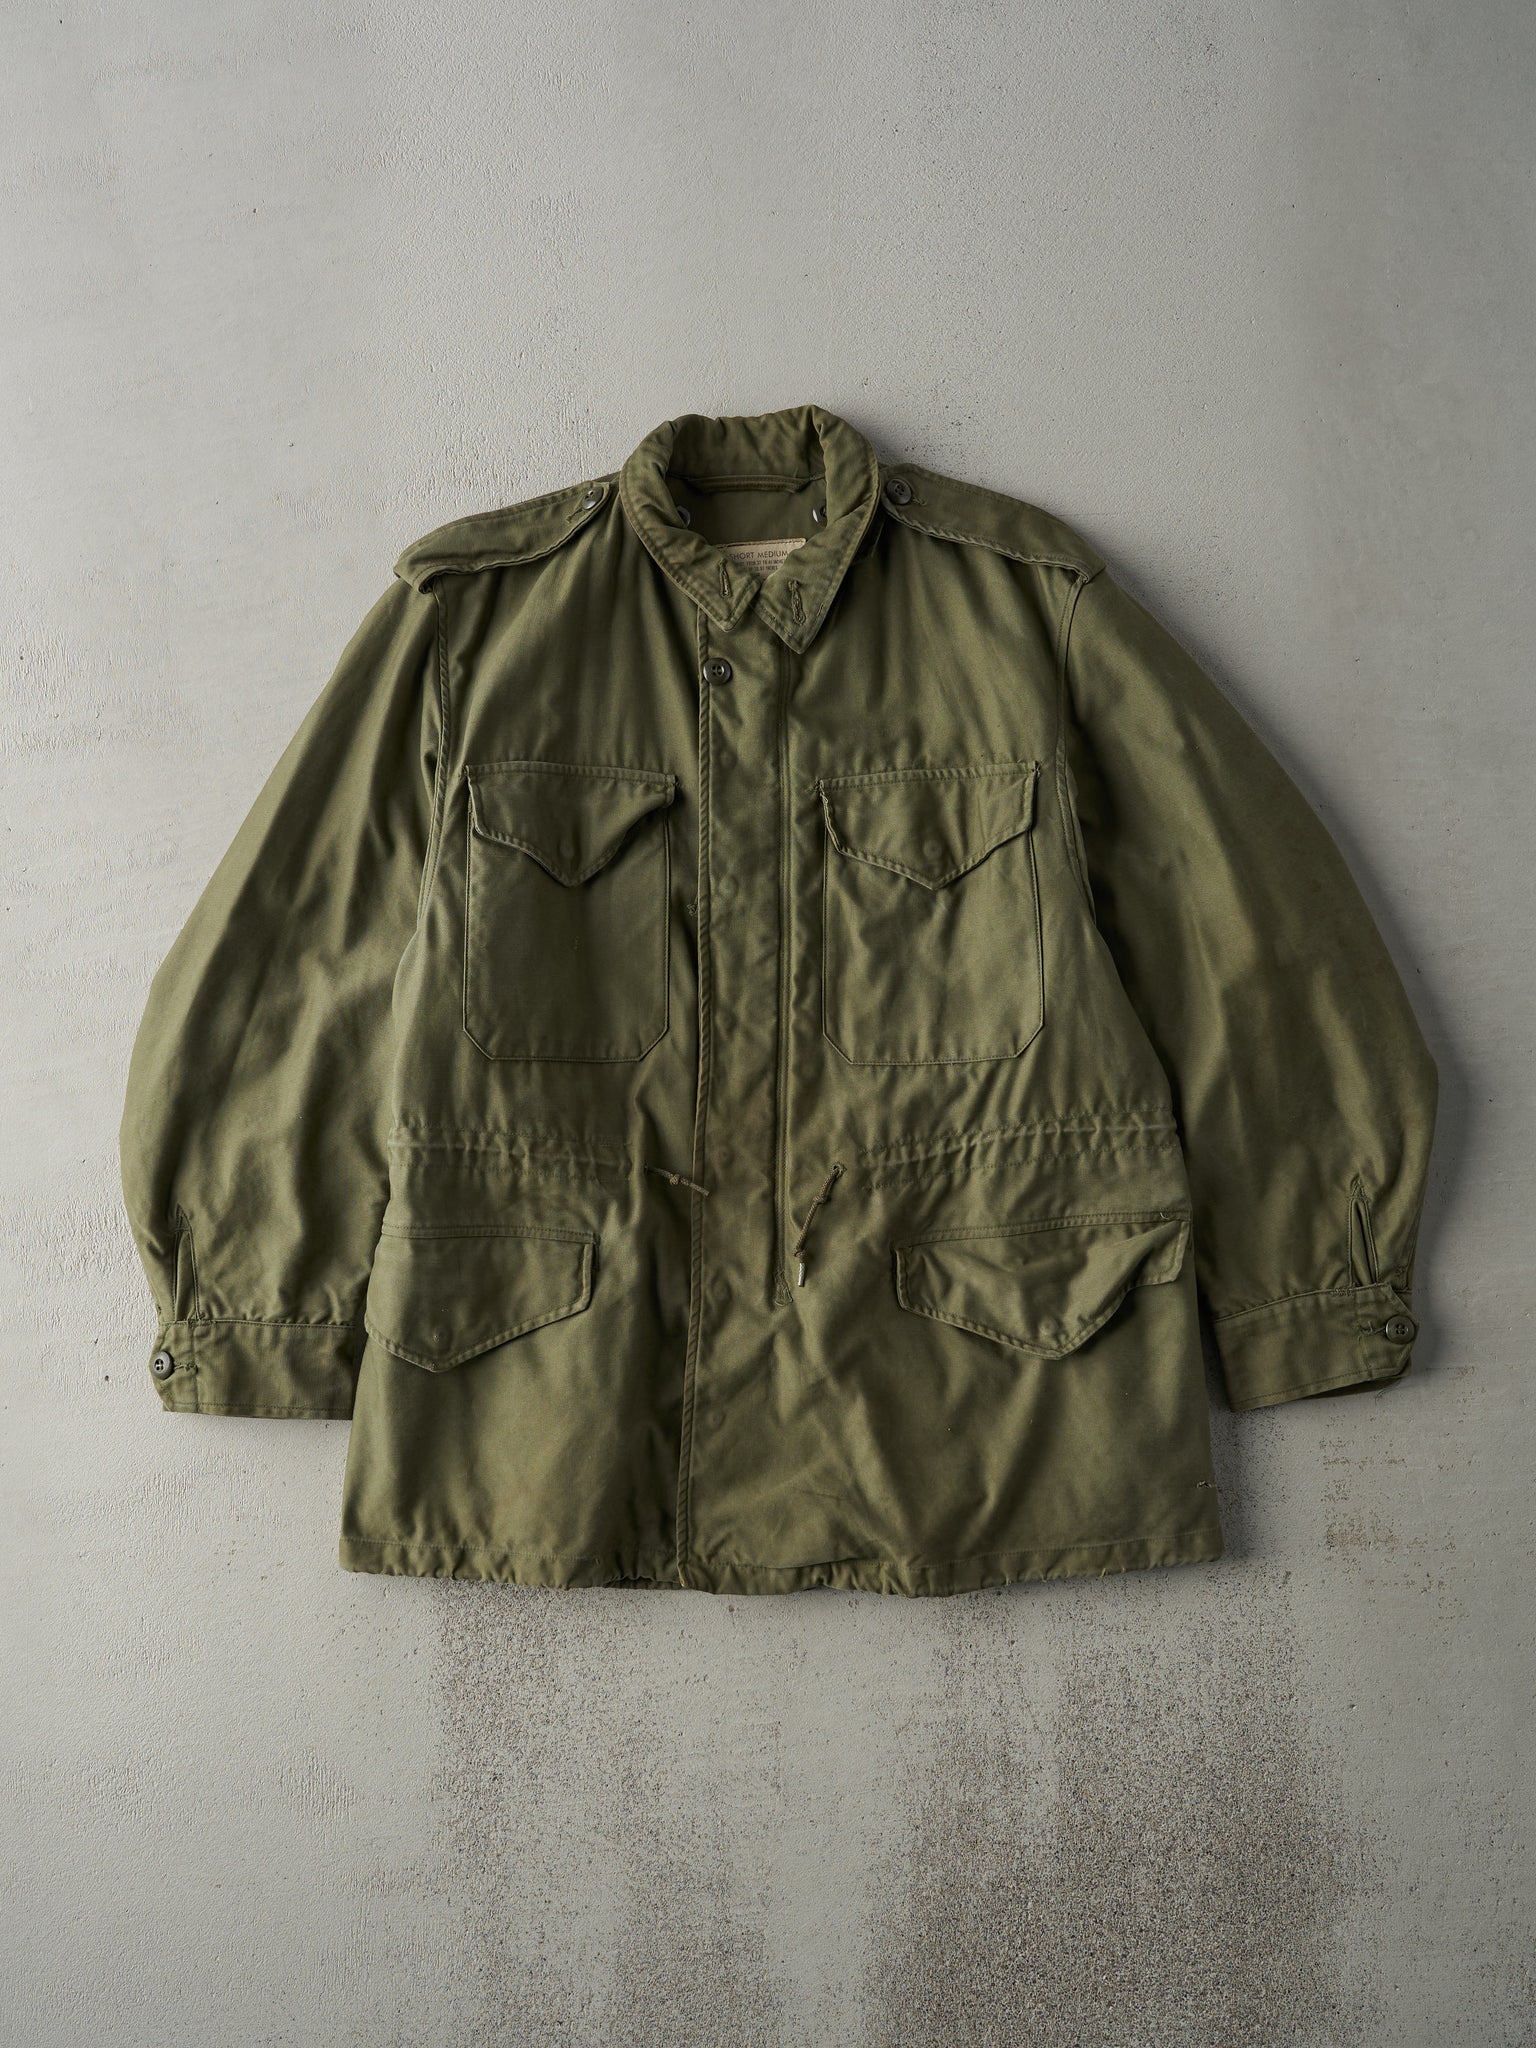 Vintage 60s Olive Green OG 107 Field Coat Military Jacket (M)